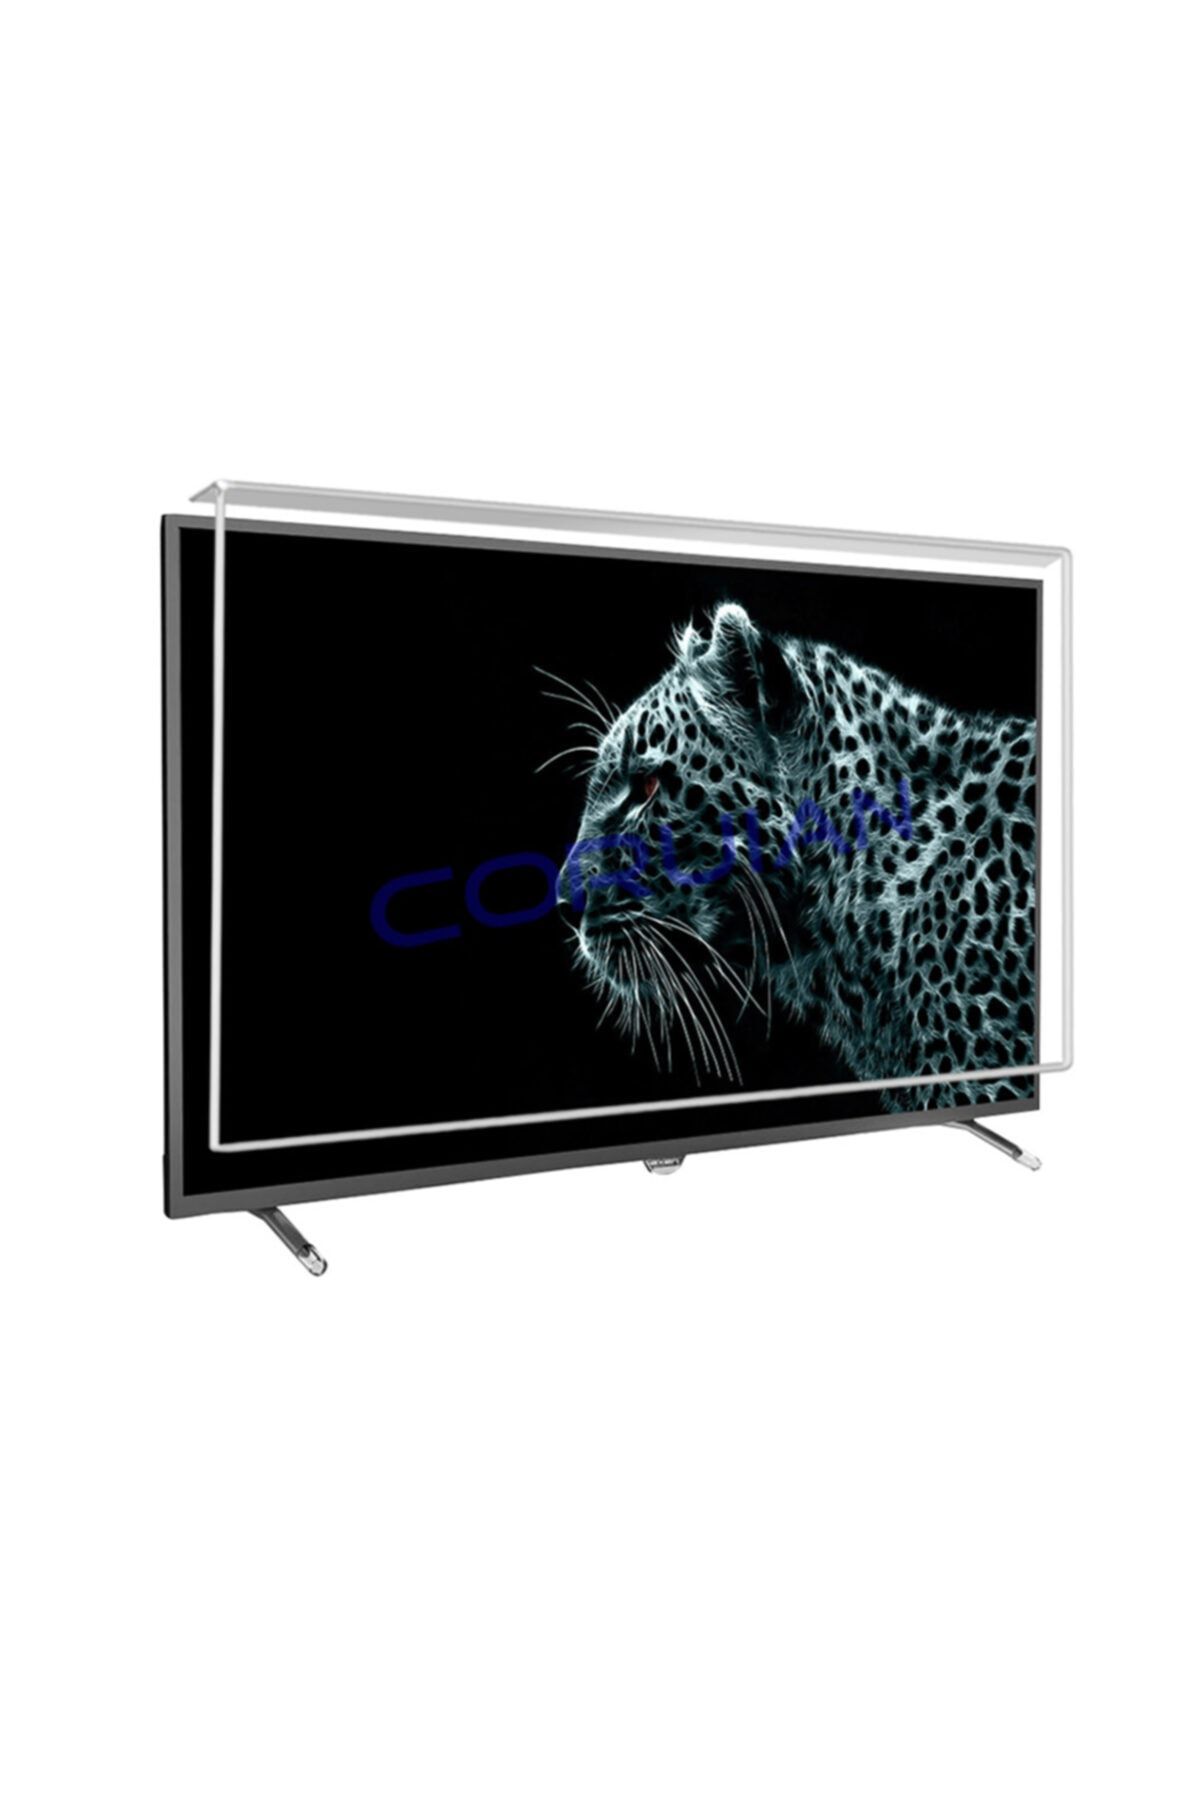 CORUIAN Axen 49" 124 Ekran Tv Ekran Koruyucu / 3mm Ekran Koruma Paneli